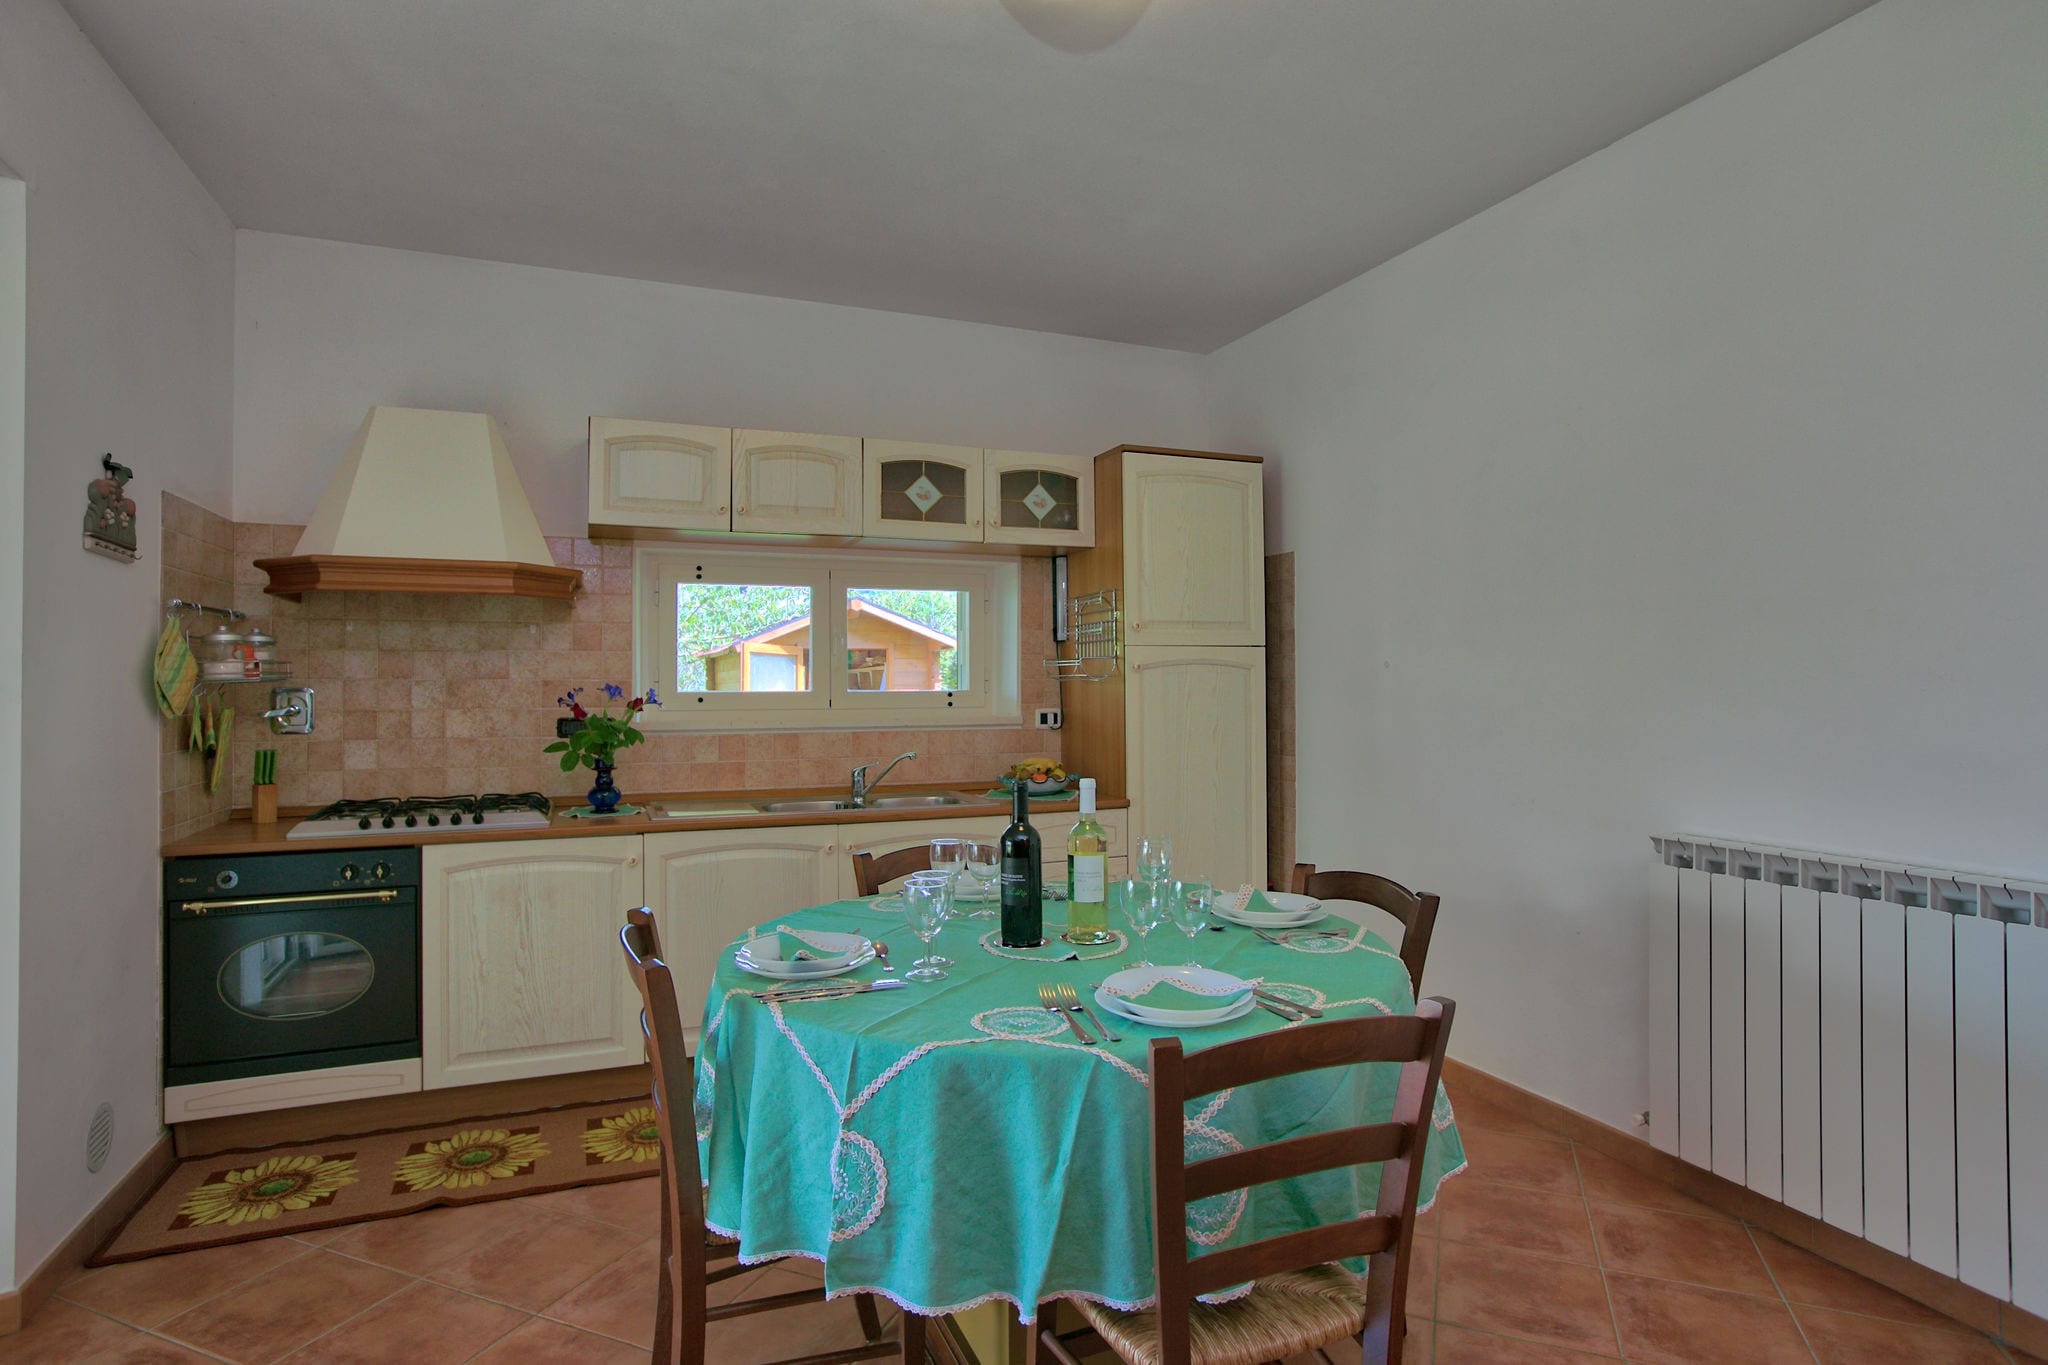 Kleines Ferienhaus in Umbrien, ideal für 4 Personen